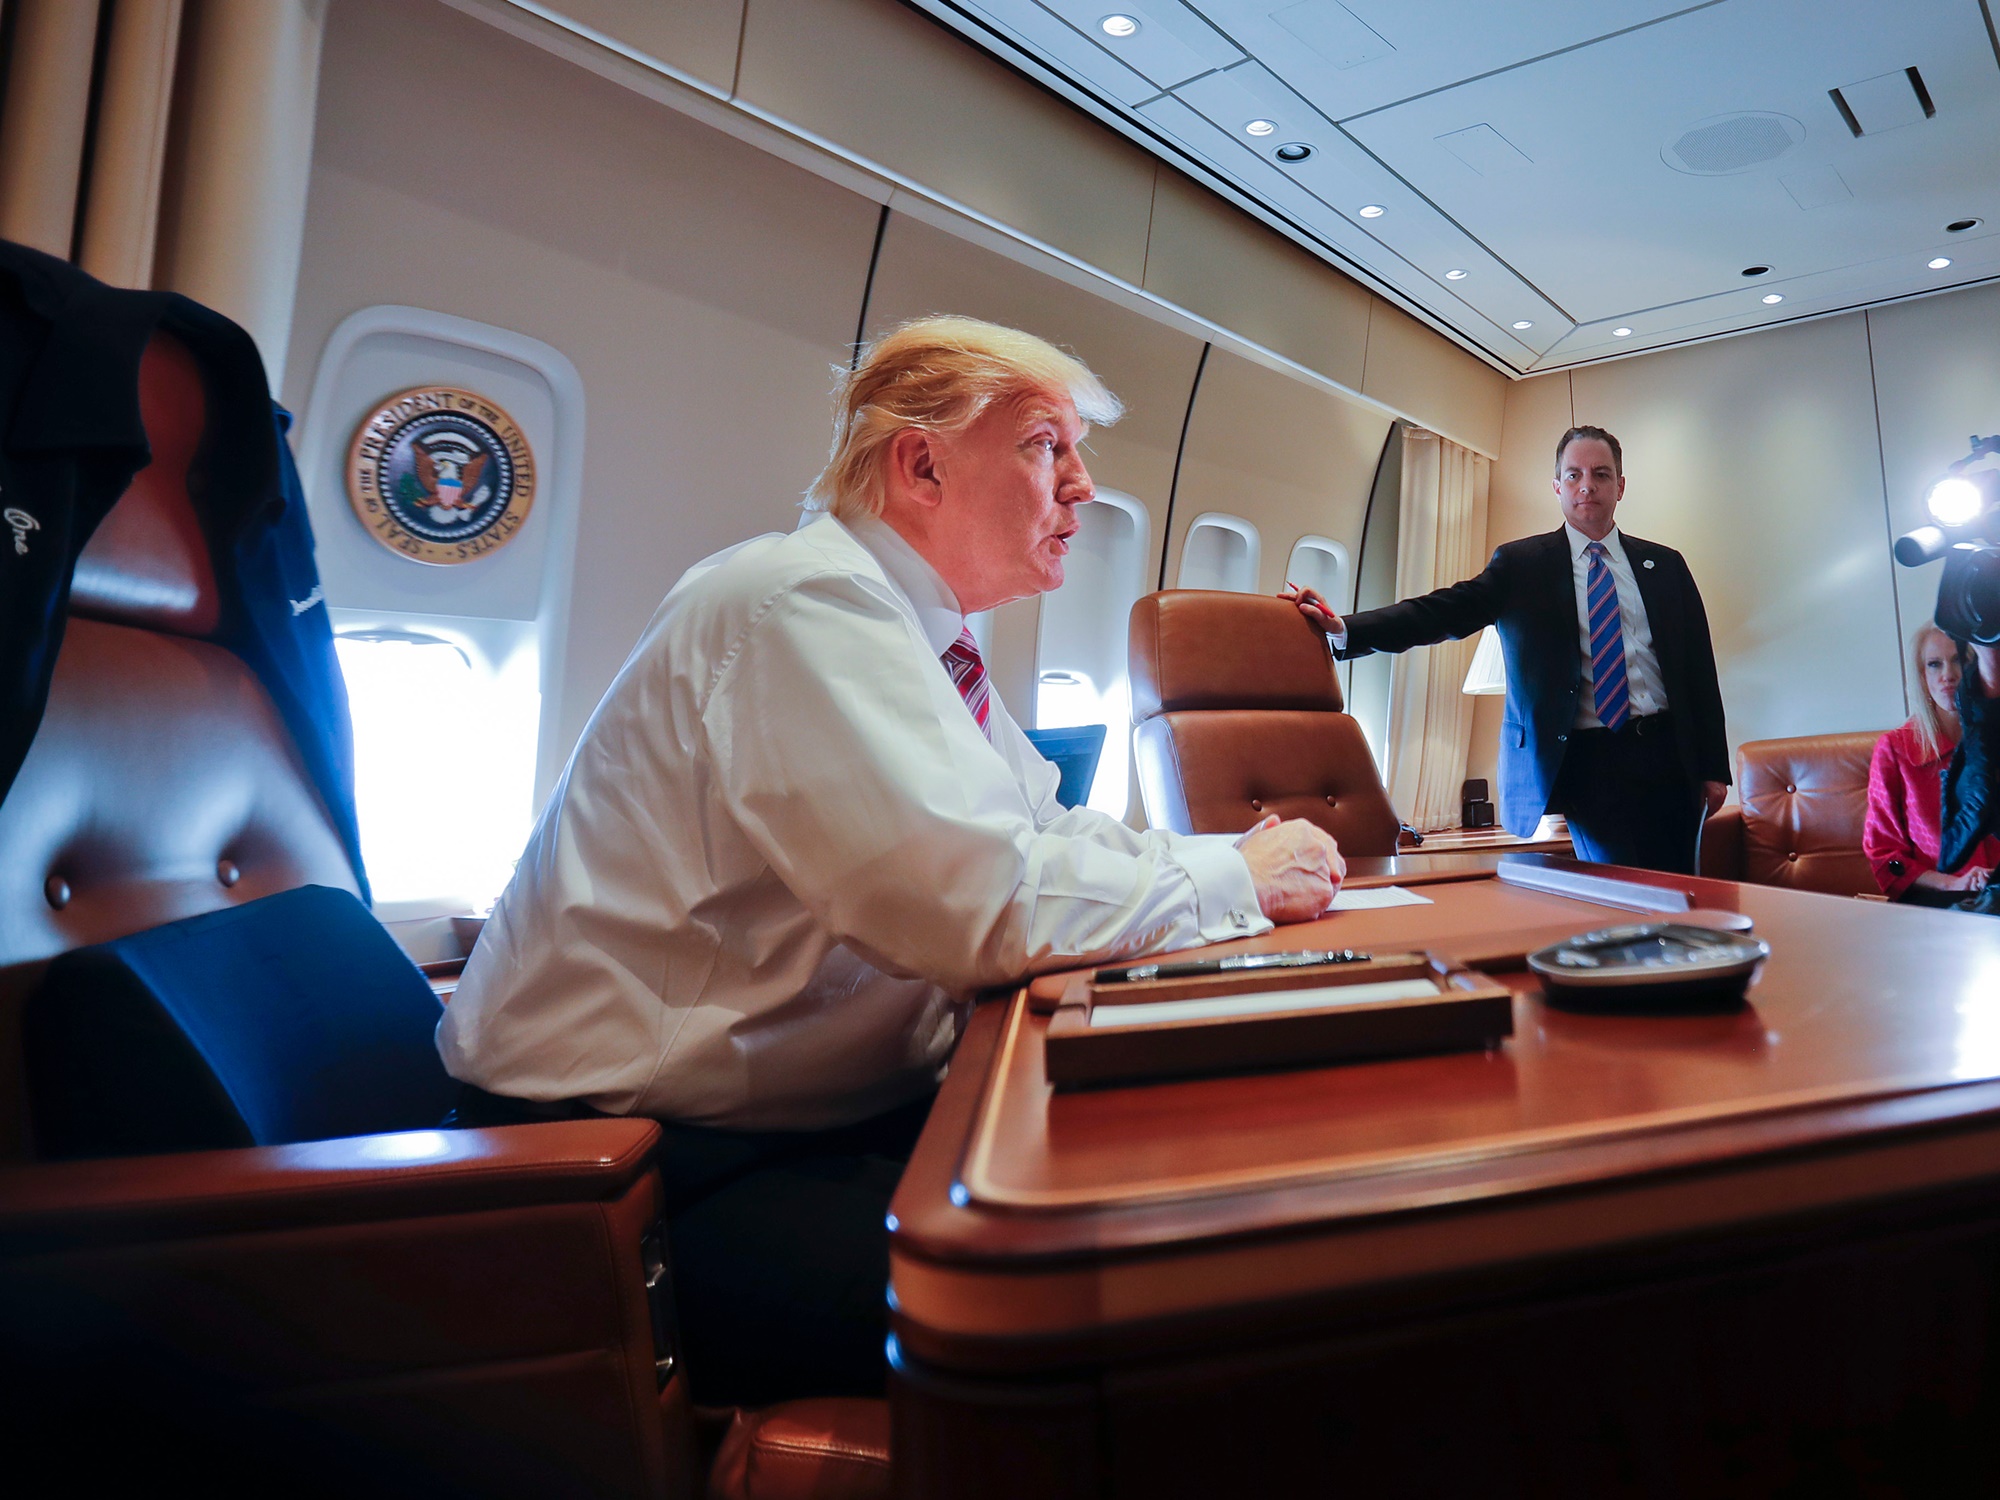 Президентский самолет. Самолет президента США Air Force one. Борт номер 1 президента США внутри. Салон самолета президента США. Боинг 747 президента США салон.